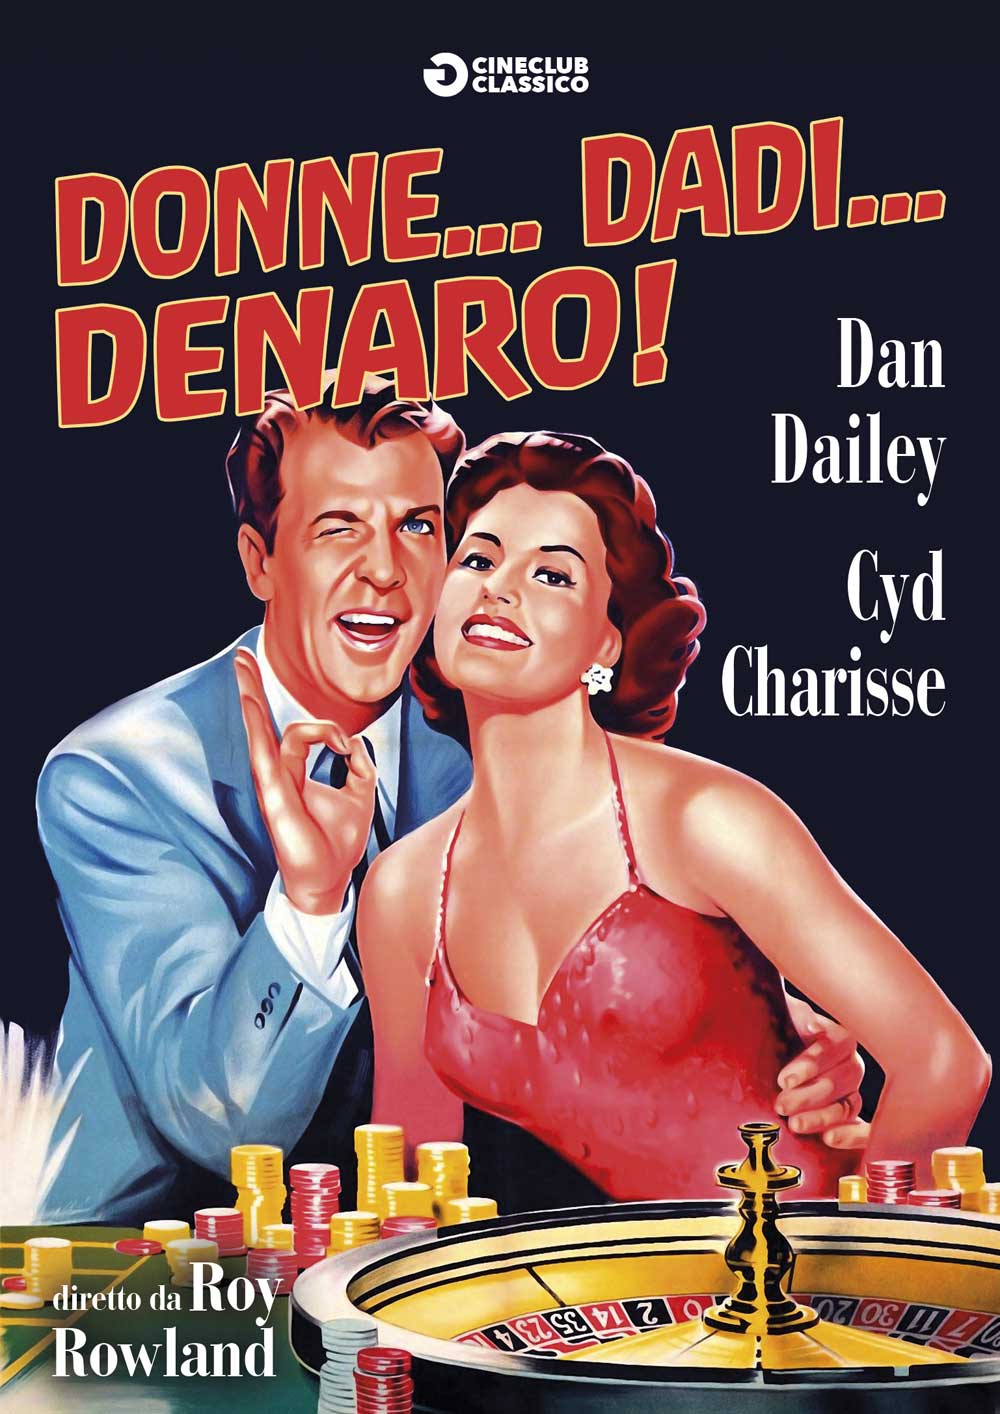 Donne… dadi… denaro (1956)